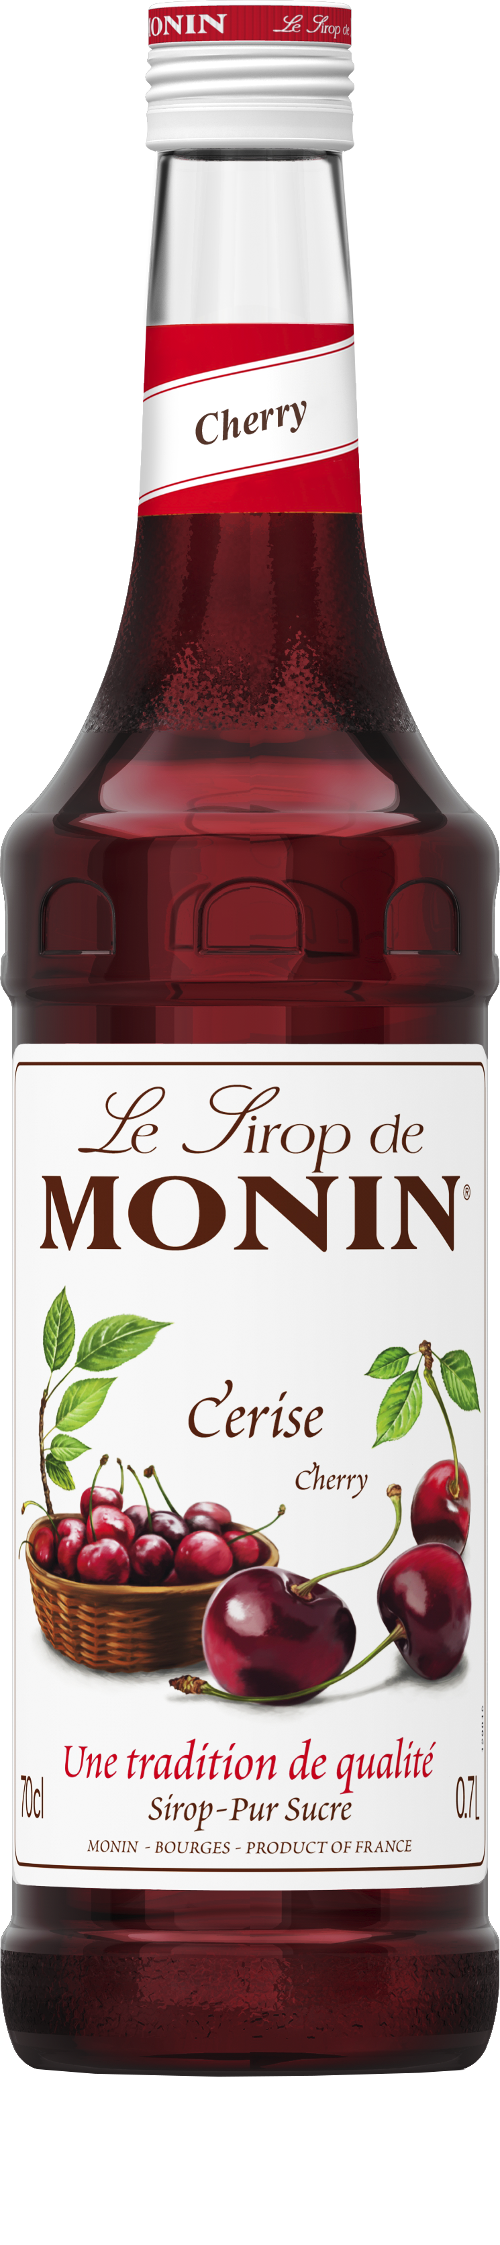 Le Sirop de MONIN Cherry 0.7l